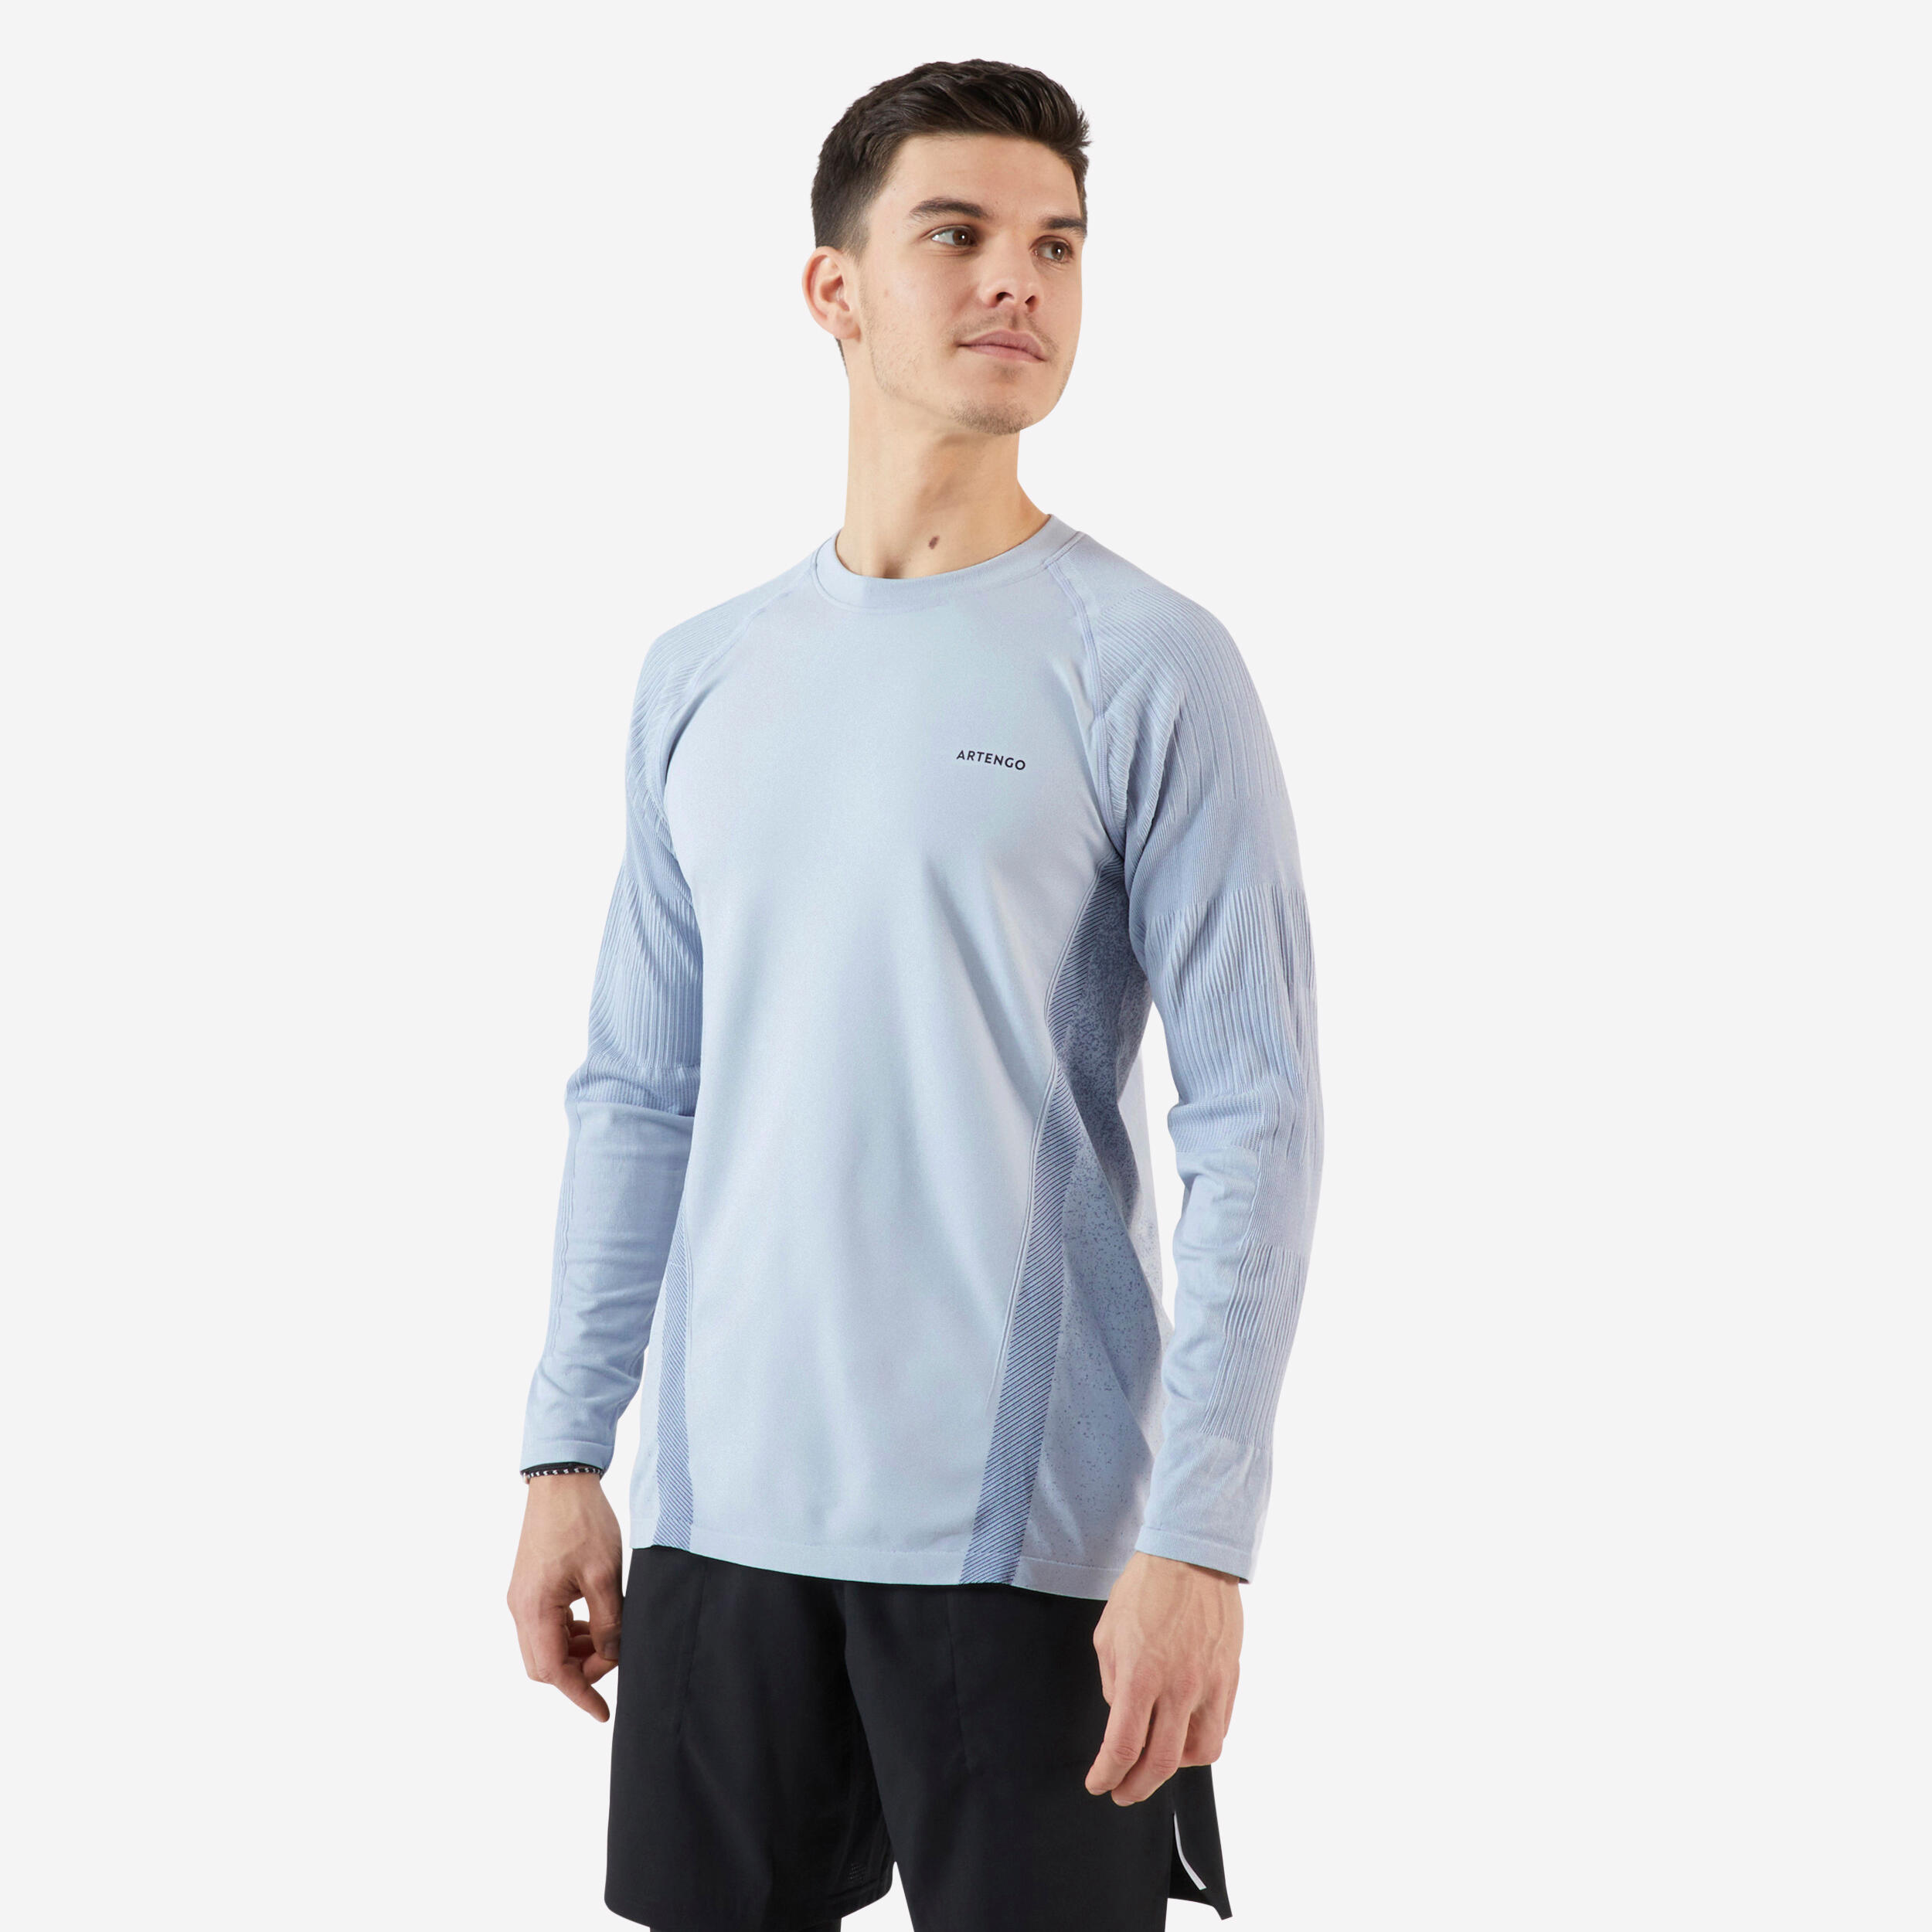 Decathlon | T-shirt tennis maniche lunghe uomo THERMIC grigio chiaro |  Artengo